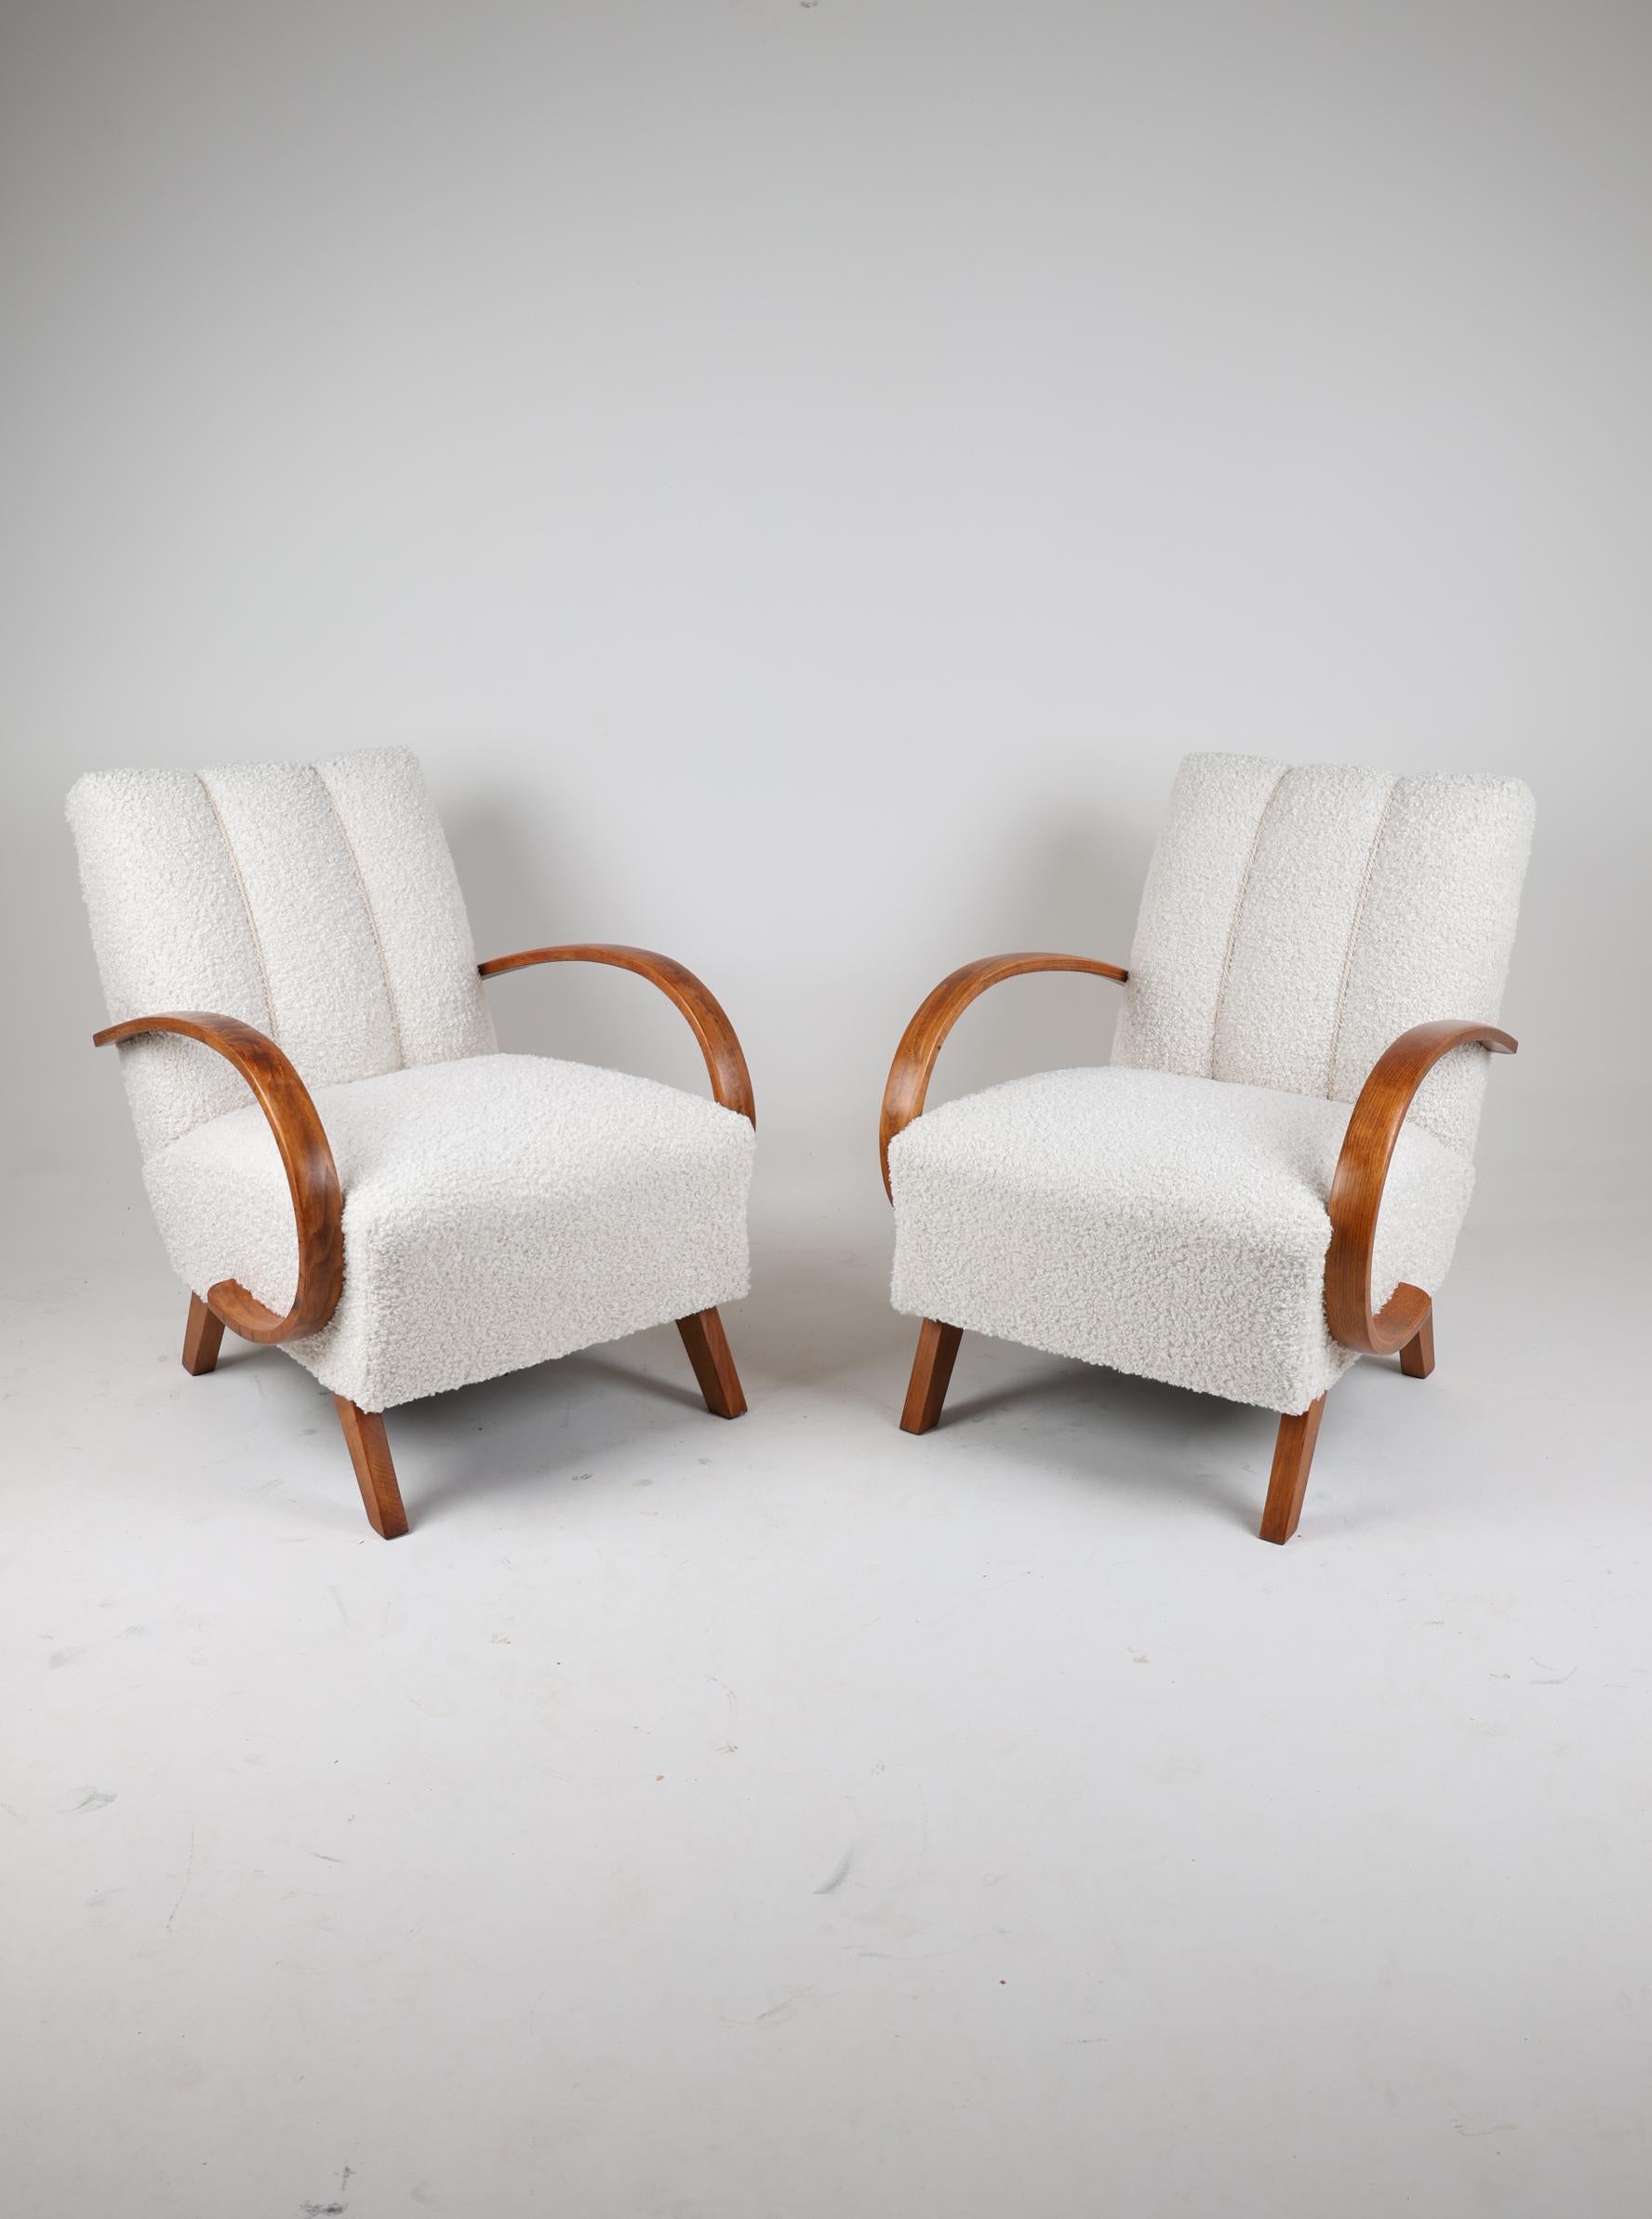 Paire de fauteuils H-410 de Jindrich Halabala 
République tchèque,  1950

Une paire de fauteuils du designer de meubles tchèque J. Halabala.
Un fauteuil aux proportions parfaites et à la forme intemporelle. Le personnage principal est le modèle H